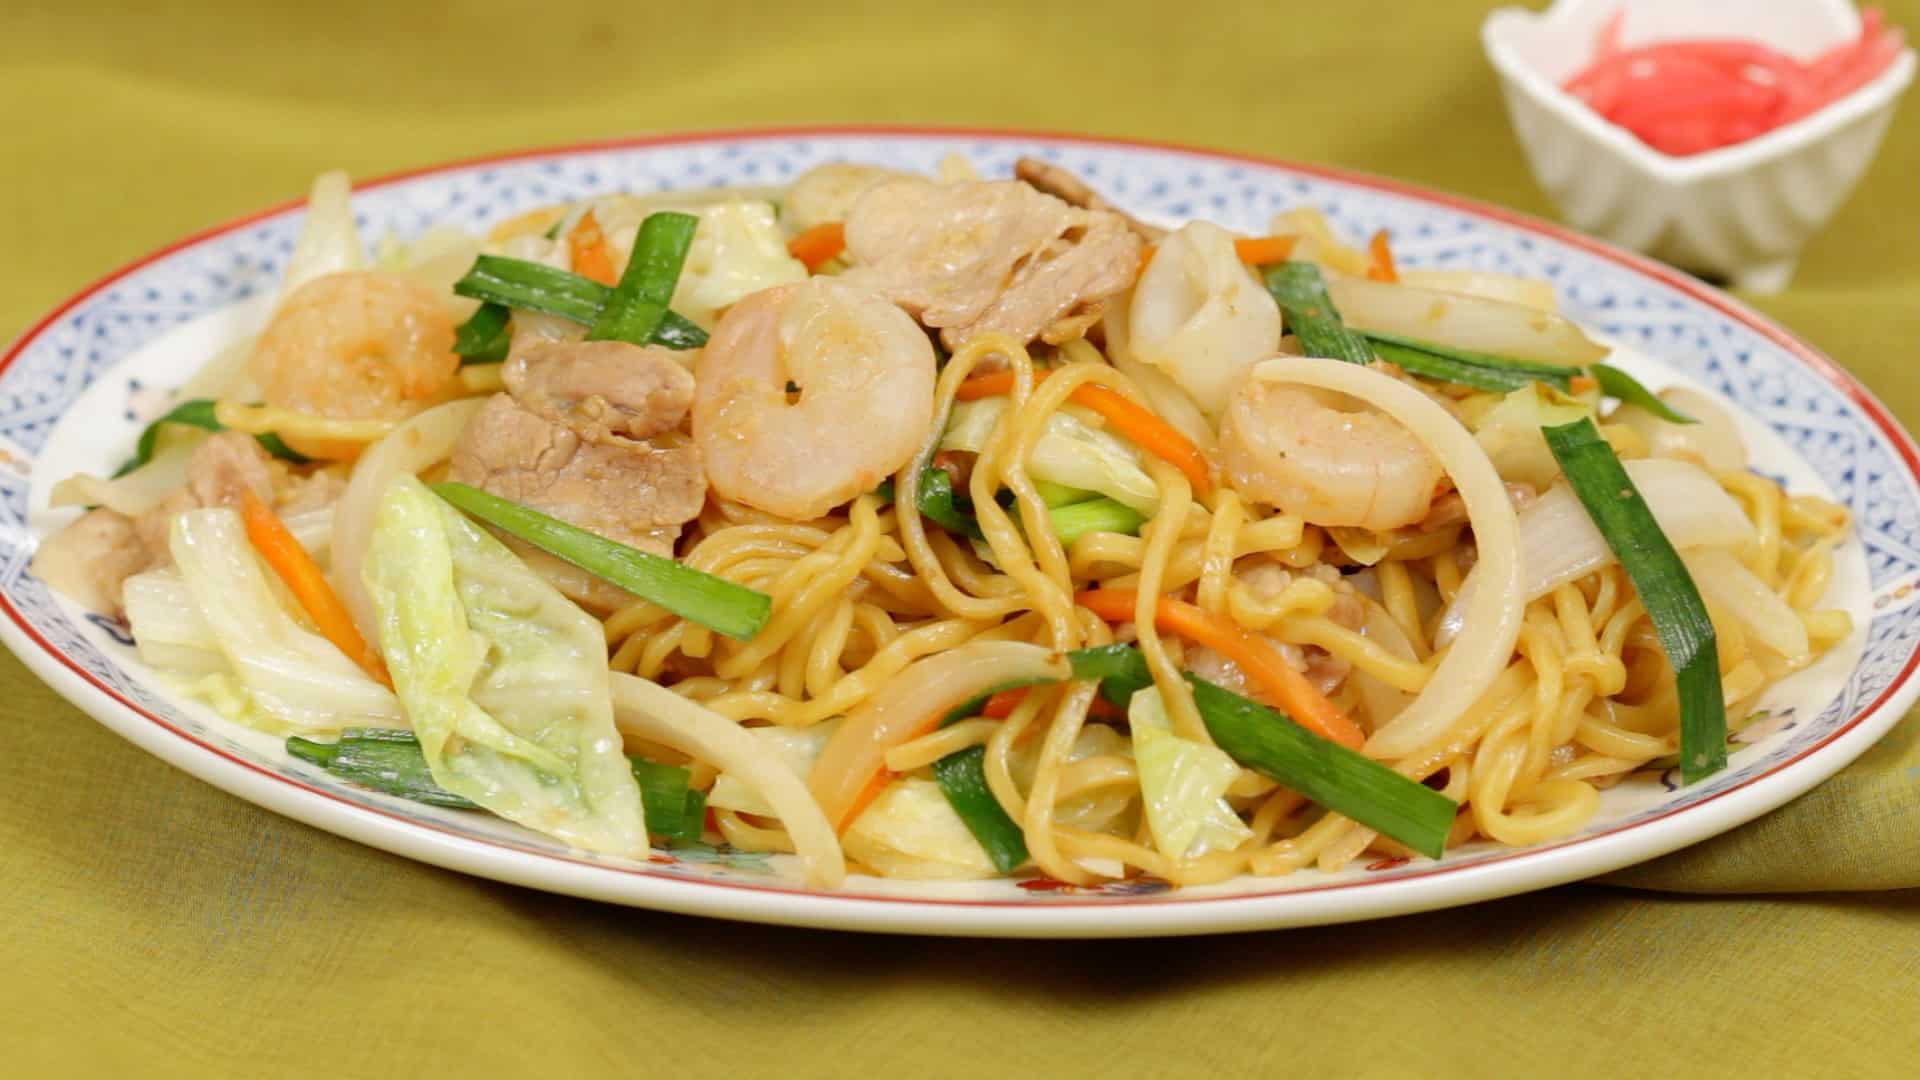 seafood yakisoba noodles recipe (stir-fried noodles with shrimp